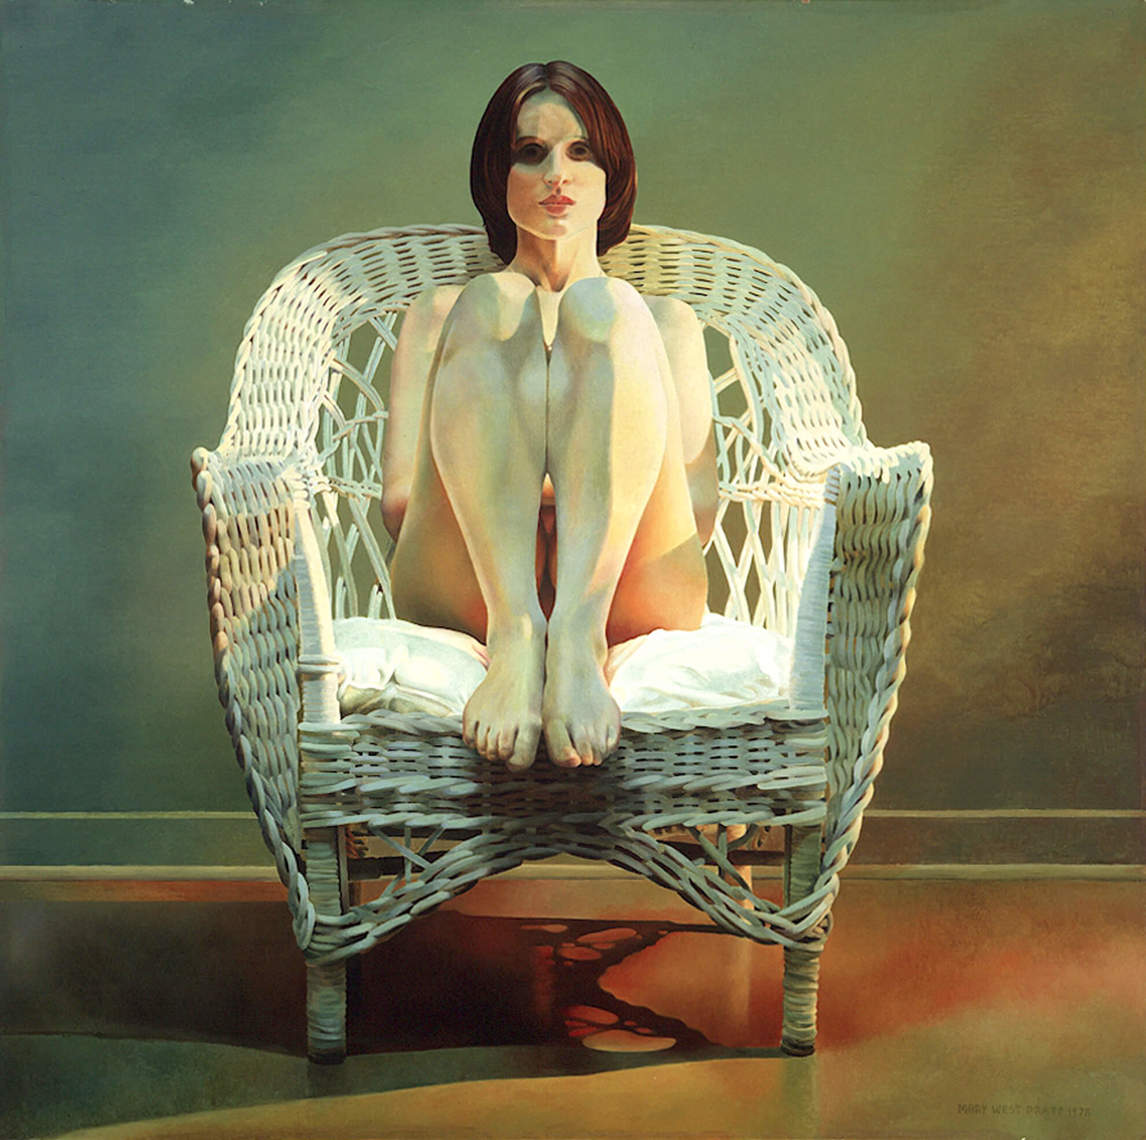 Girl in Wicker Chair (Fille dans une chaise en osier), 1978